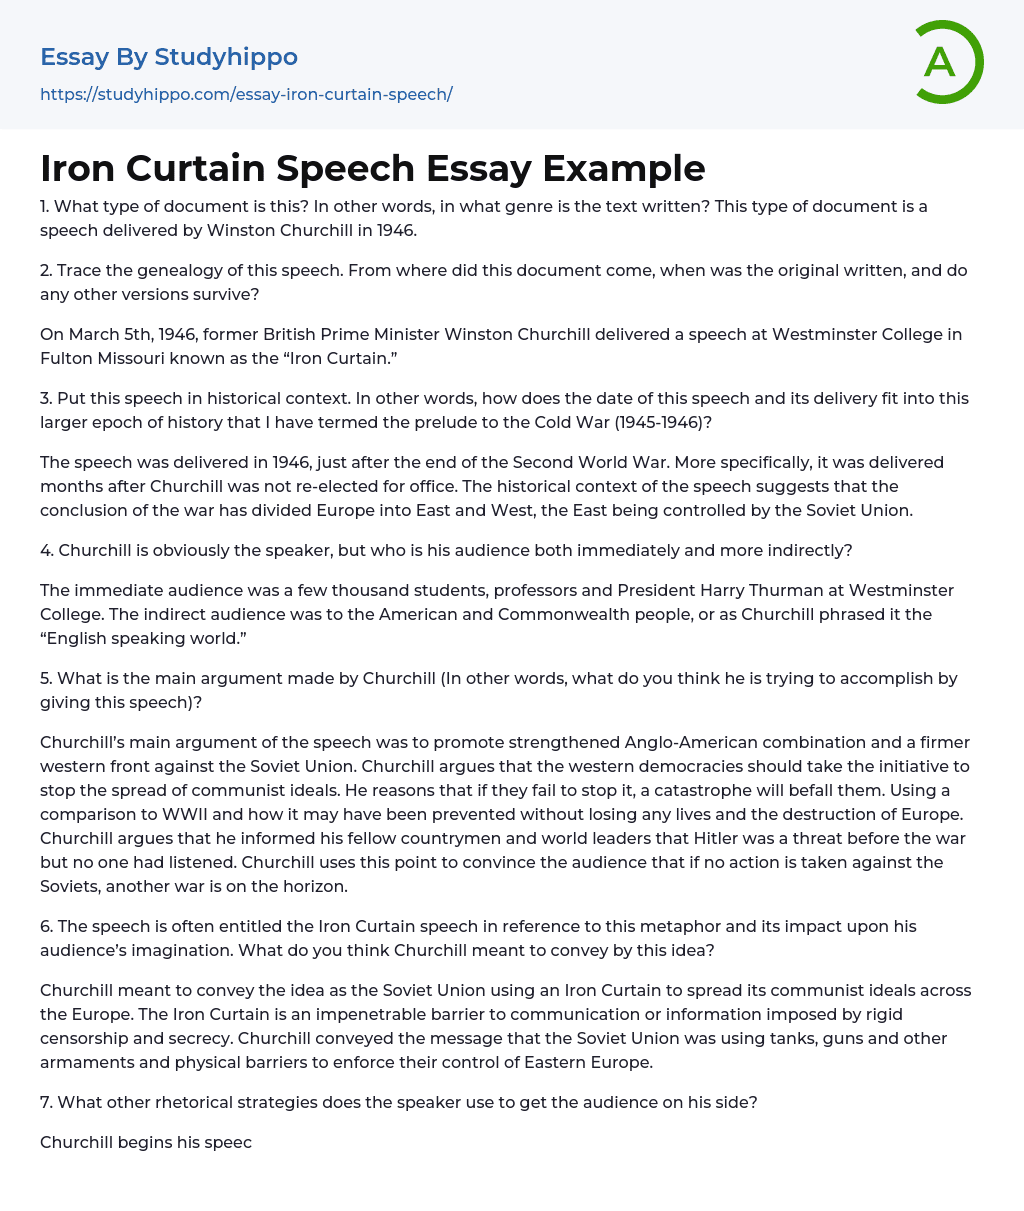 Iron Curtain Speech Essay Example